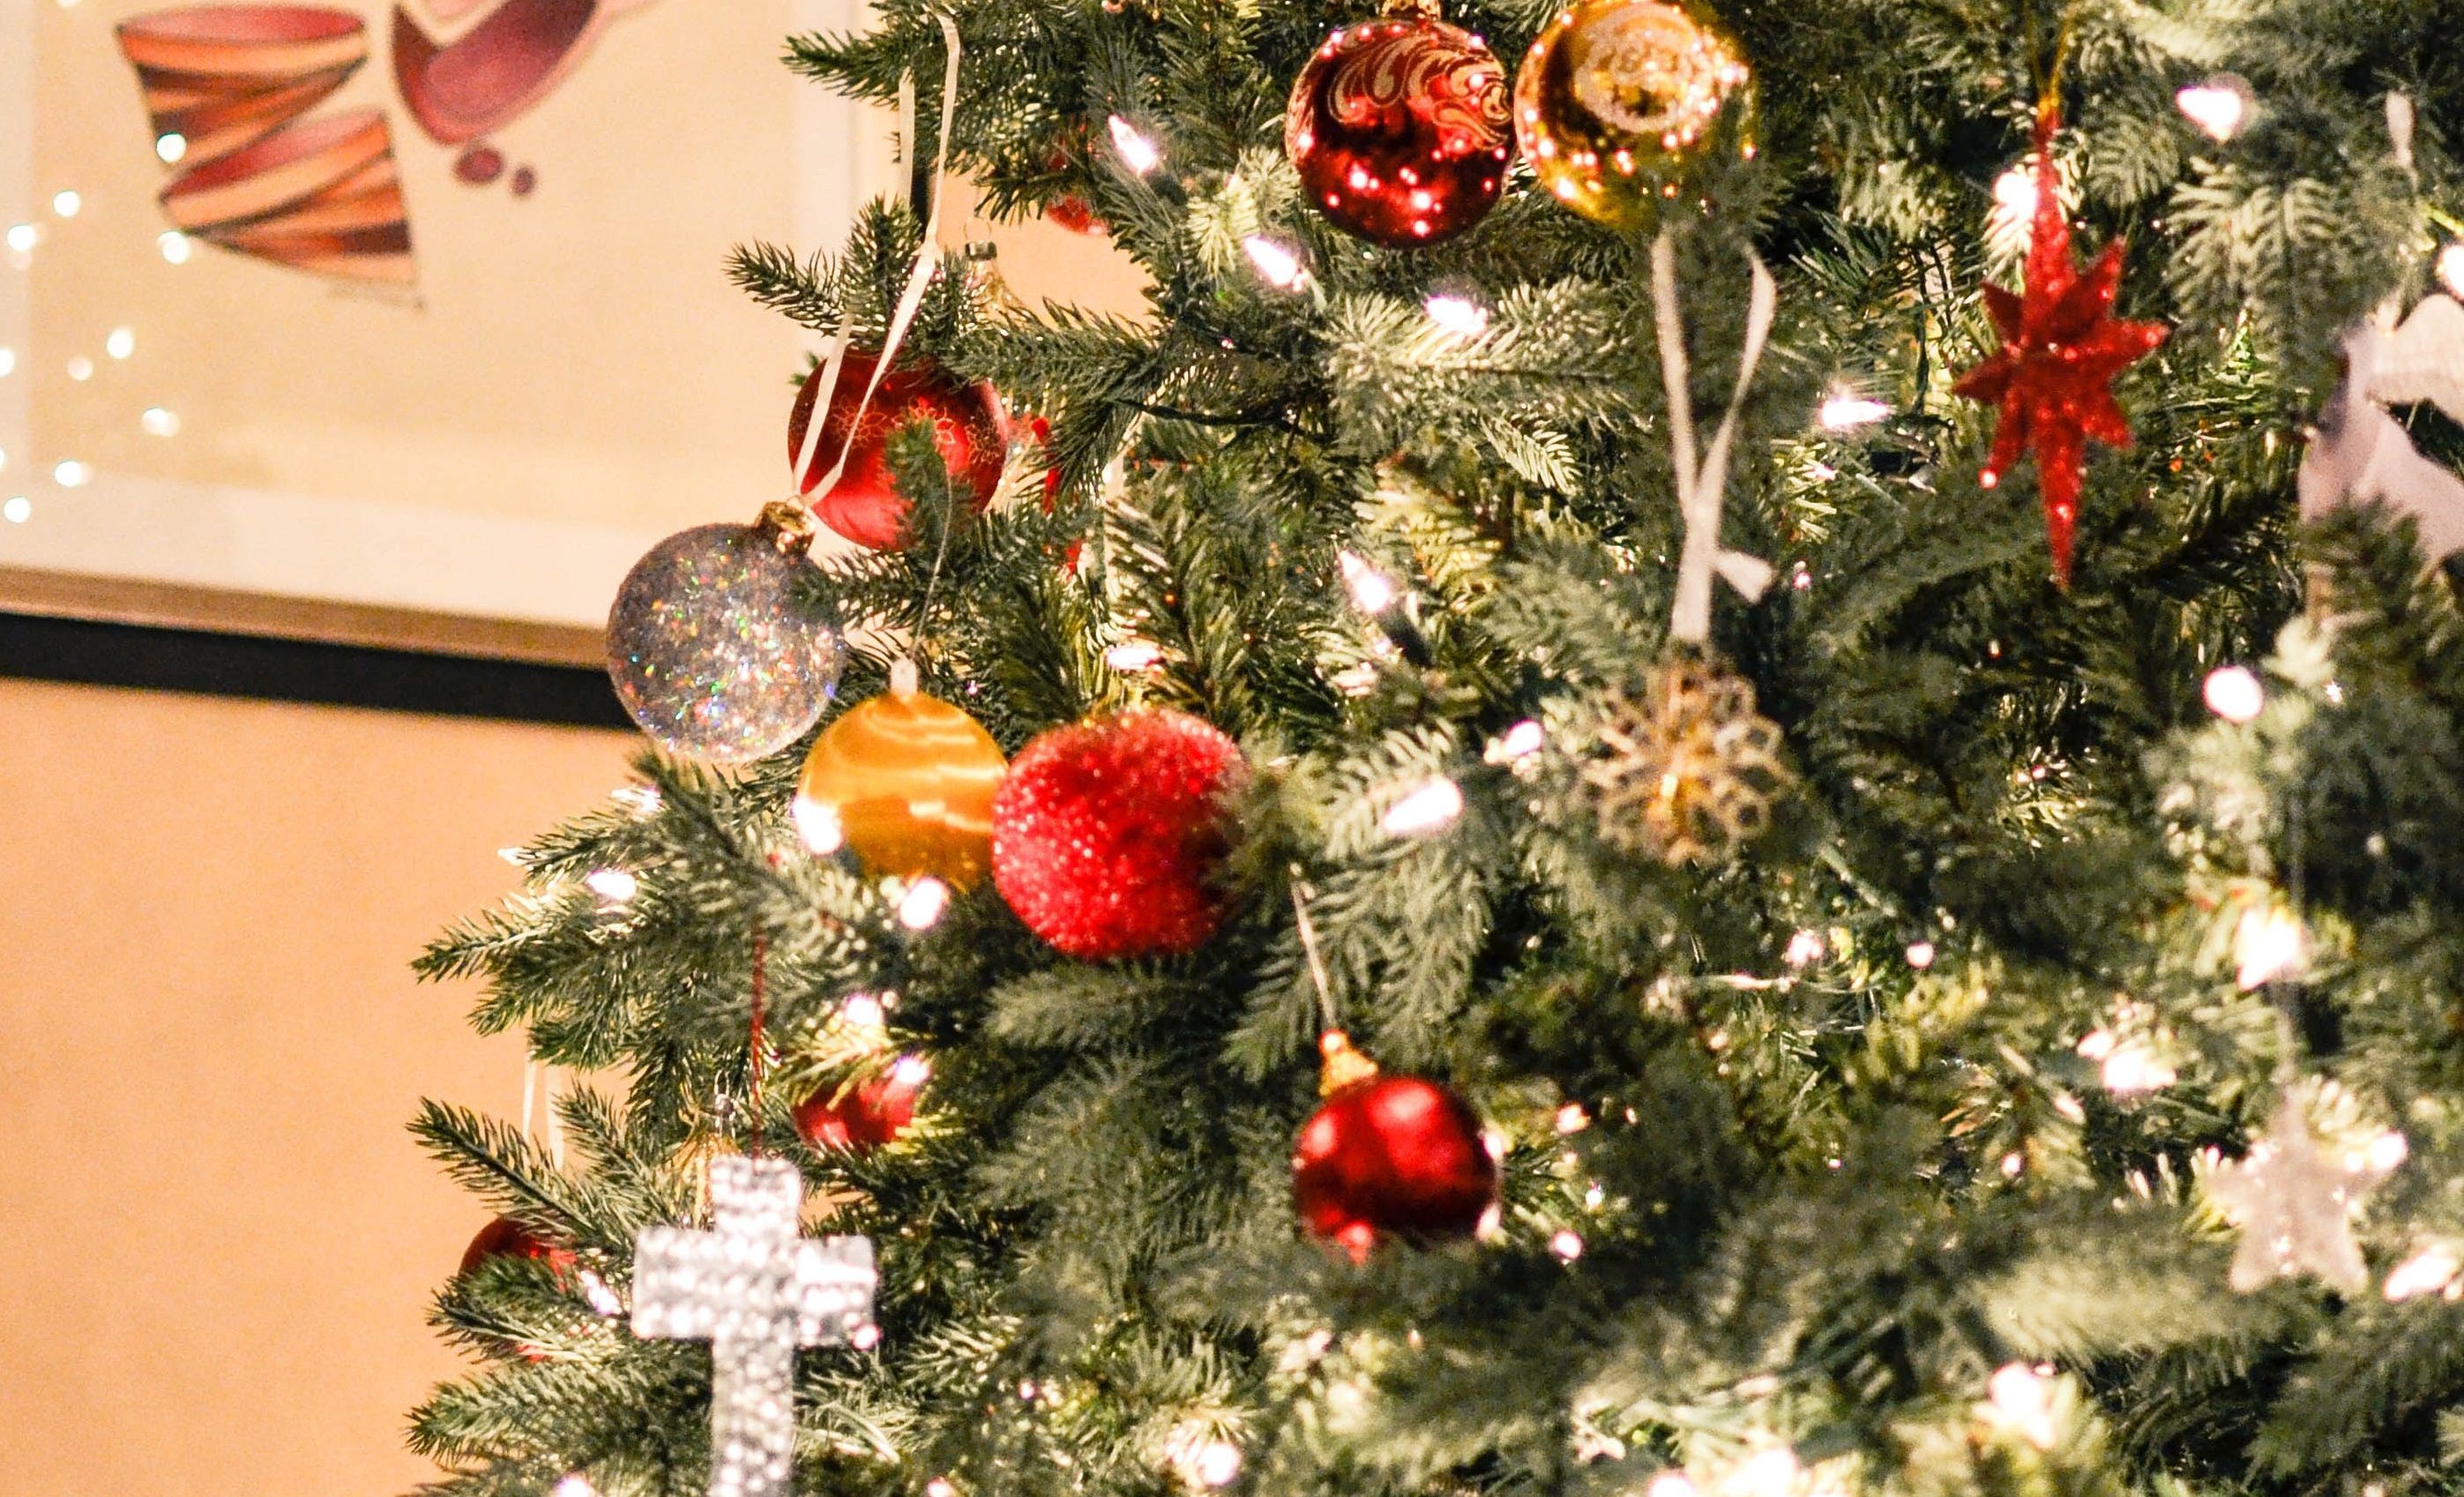 Chicago se prepara para iluminar el árbol de Navidad del Millennium